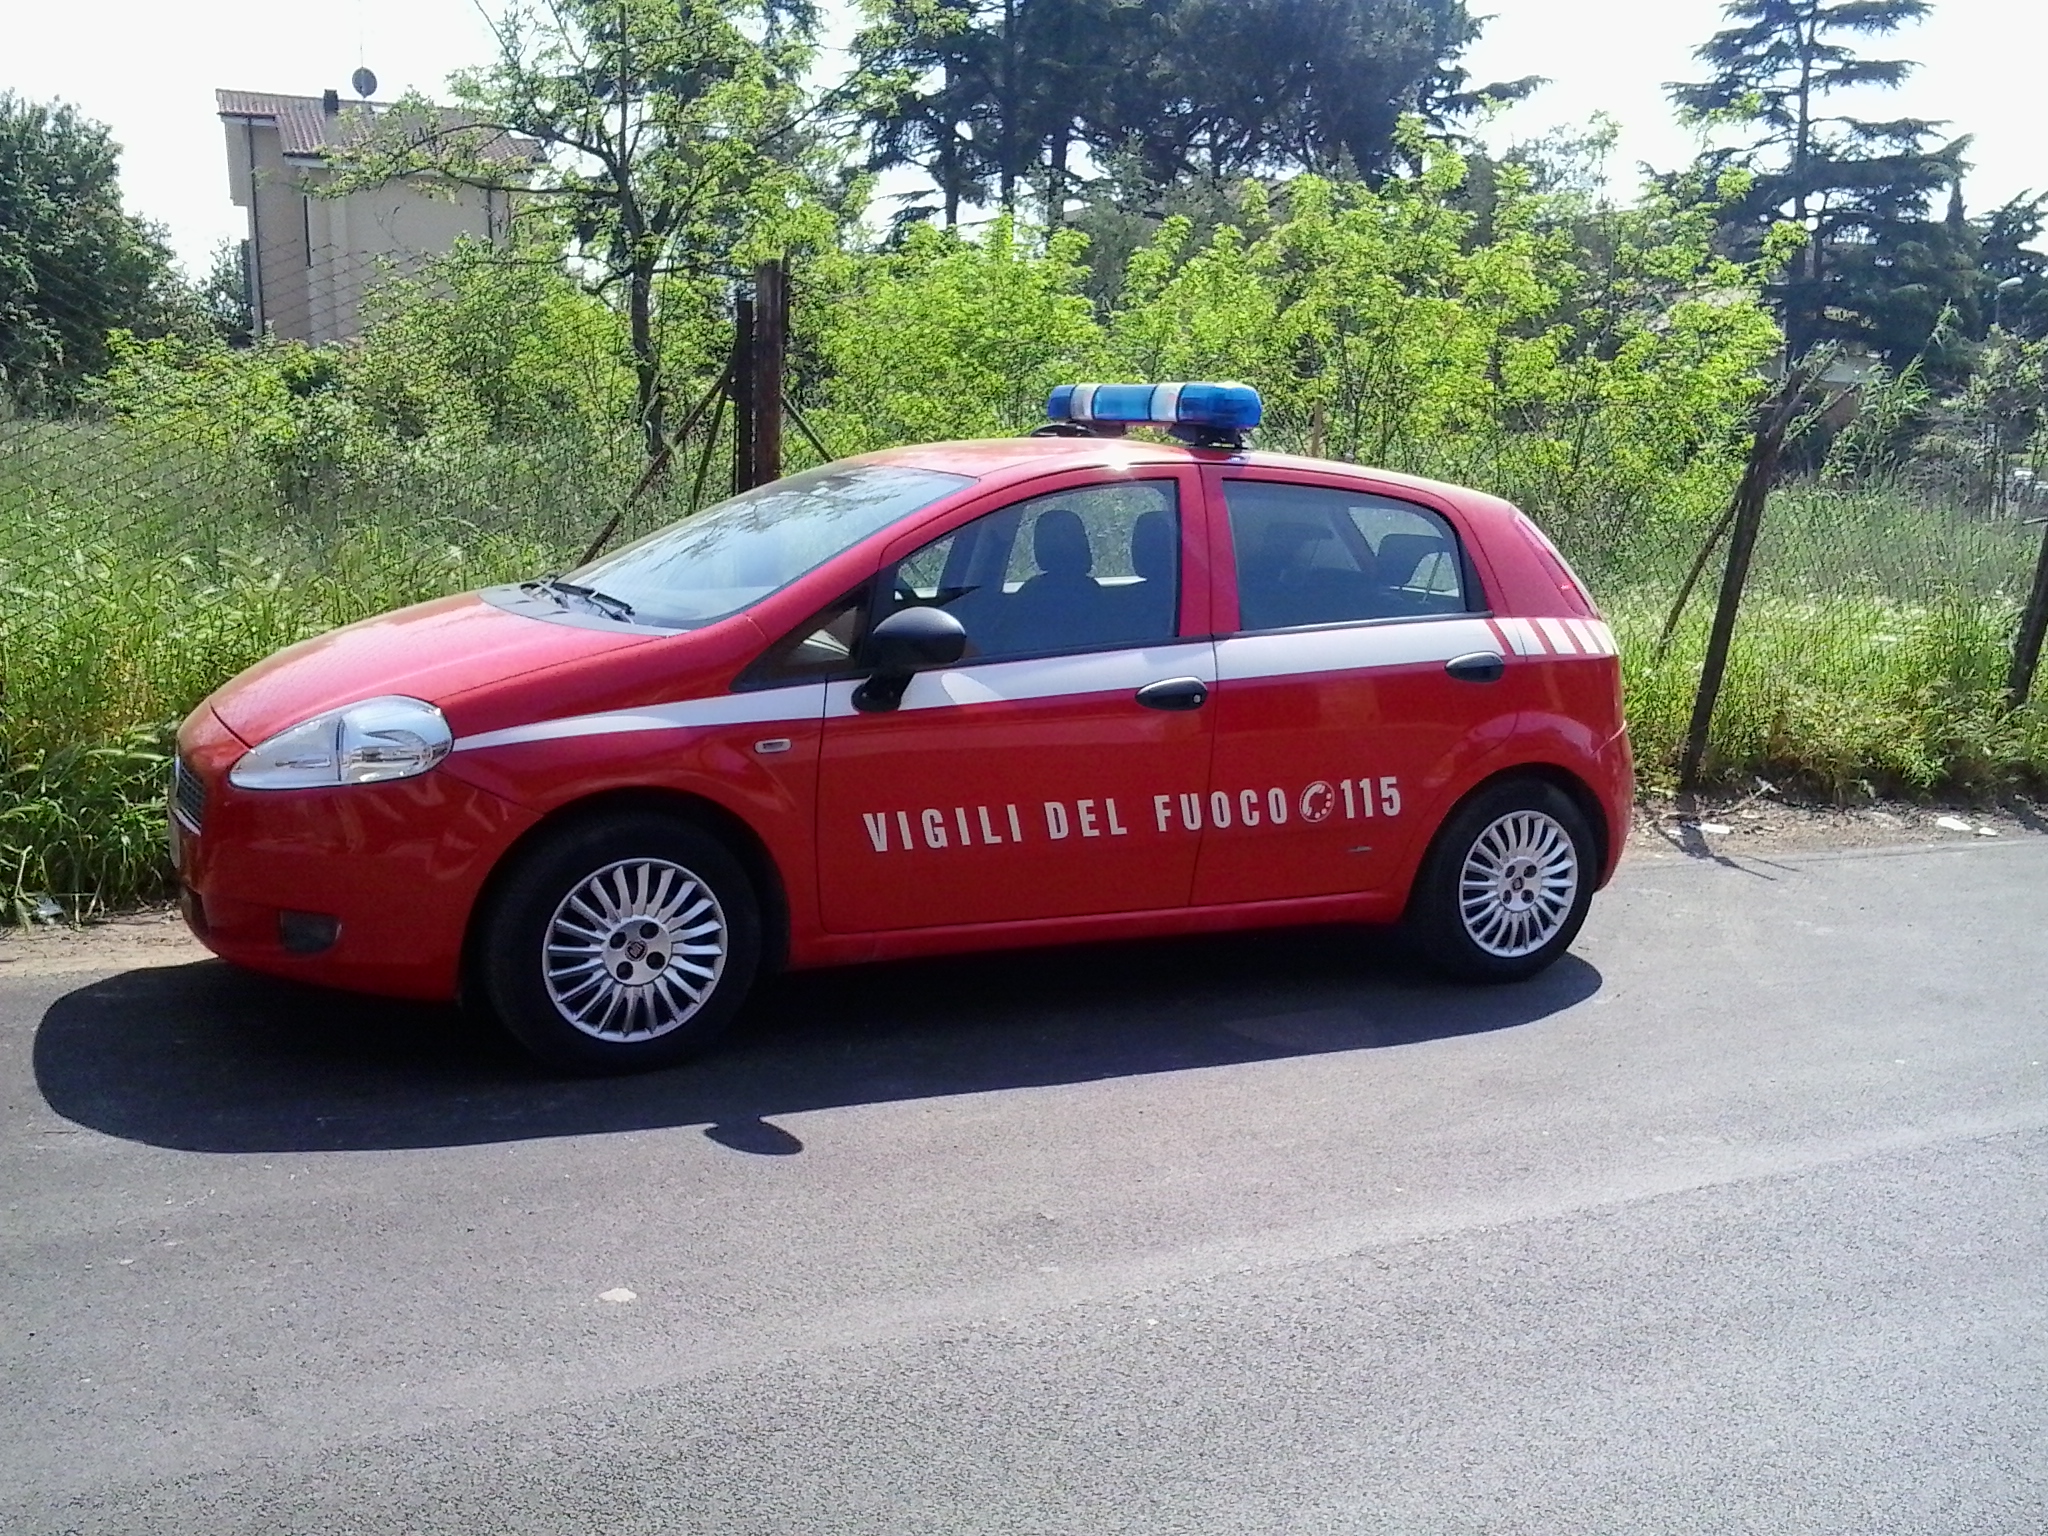 File:Fiat Punto Vigili del Fuoco.jpg - Wikimedia Commons